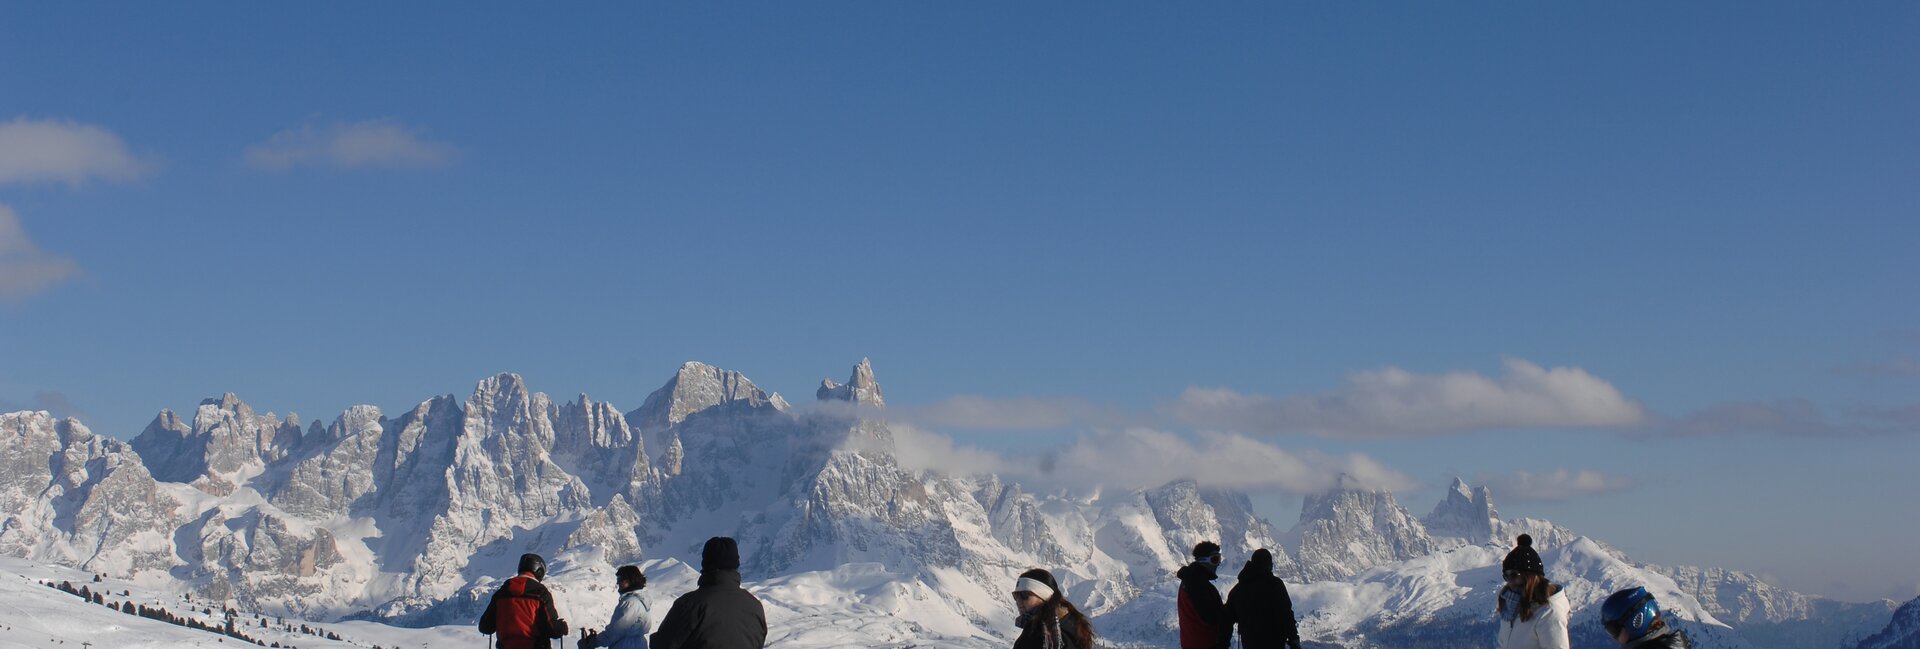 Skigebiet Moena - Alpe Lusia - Bellamonte